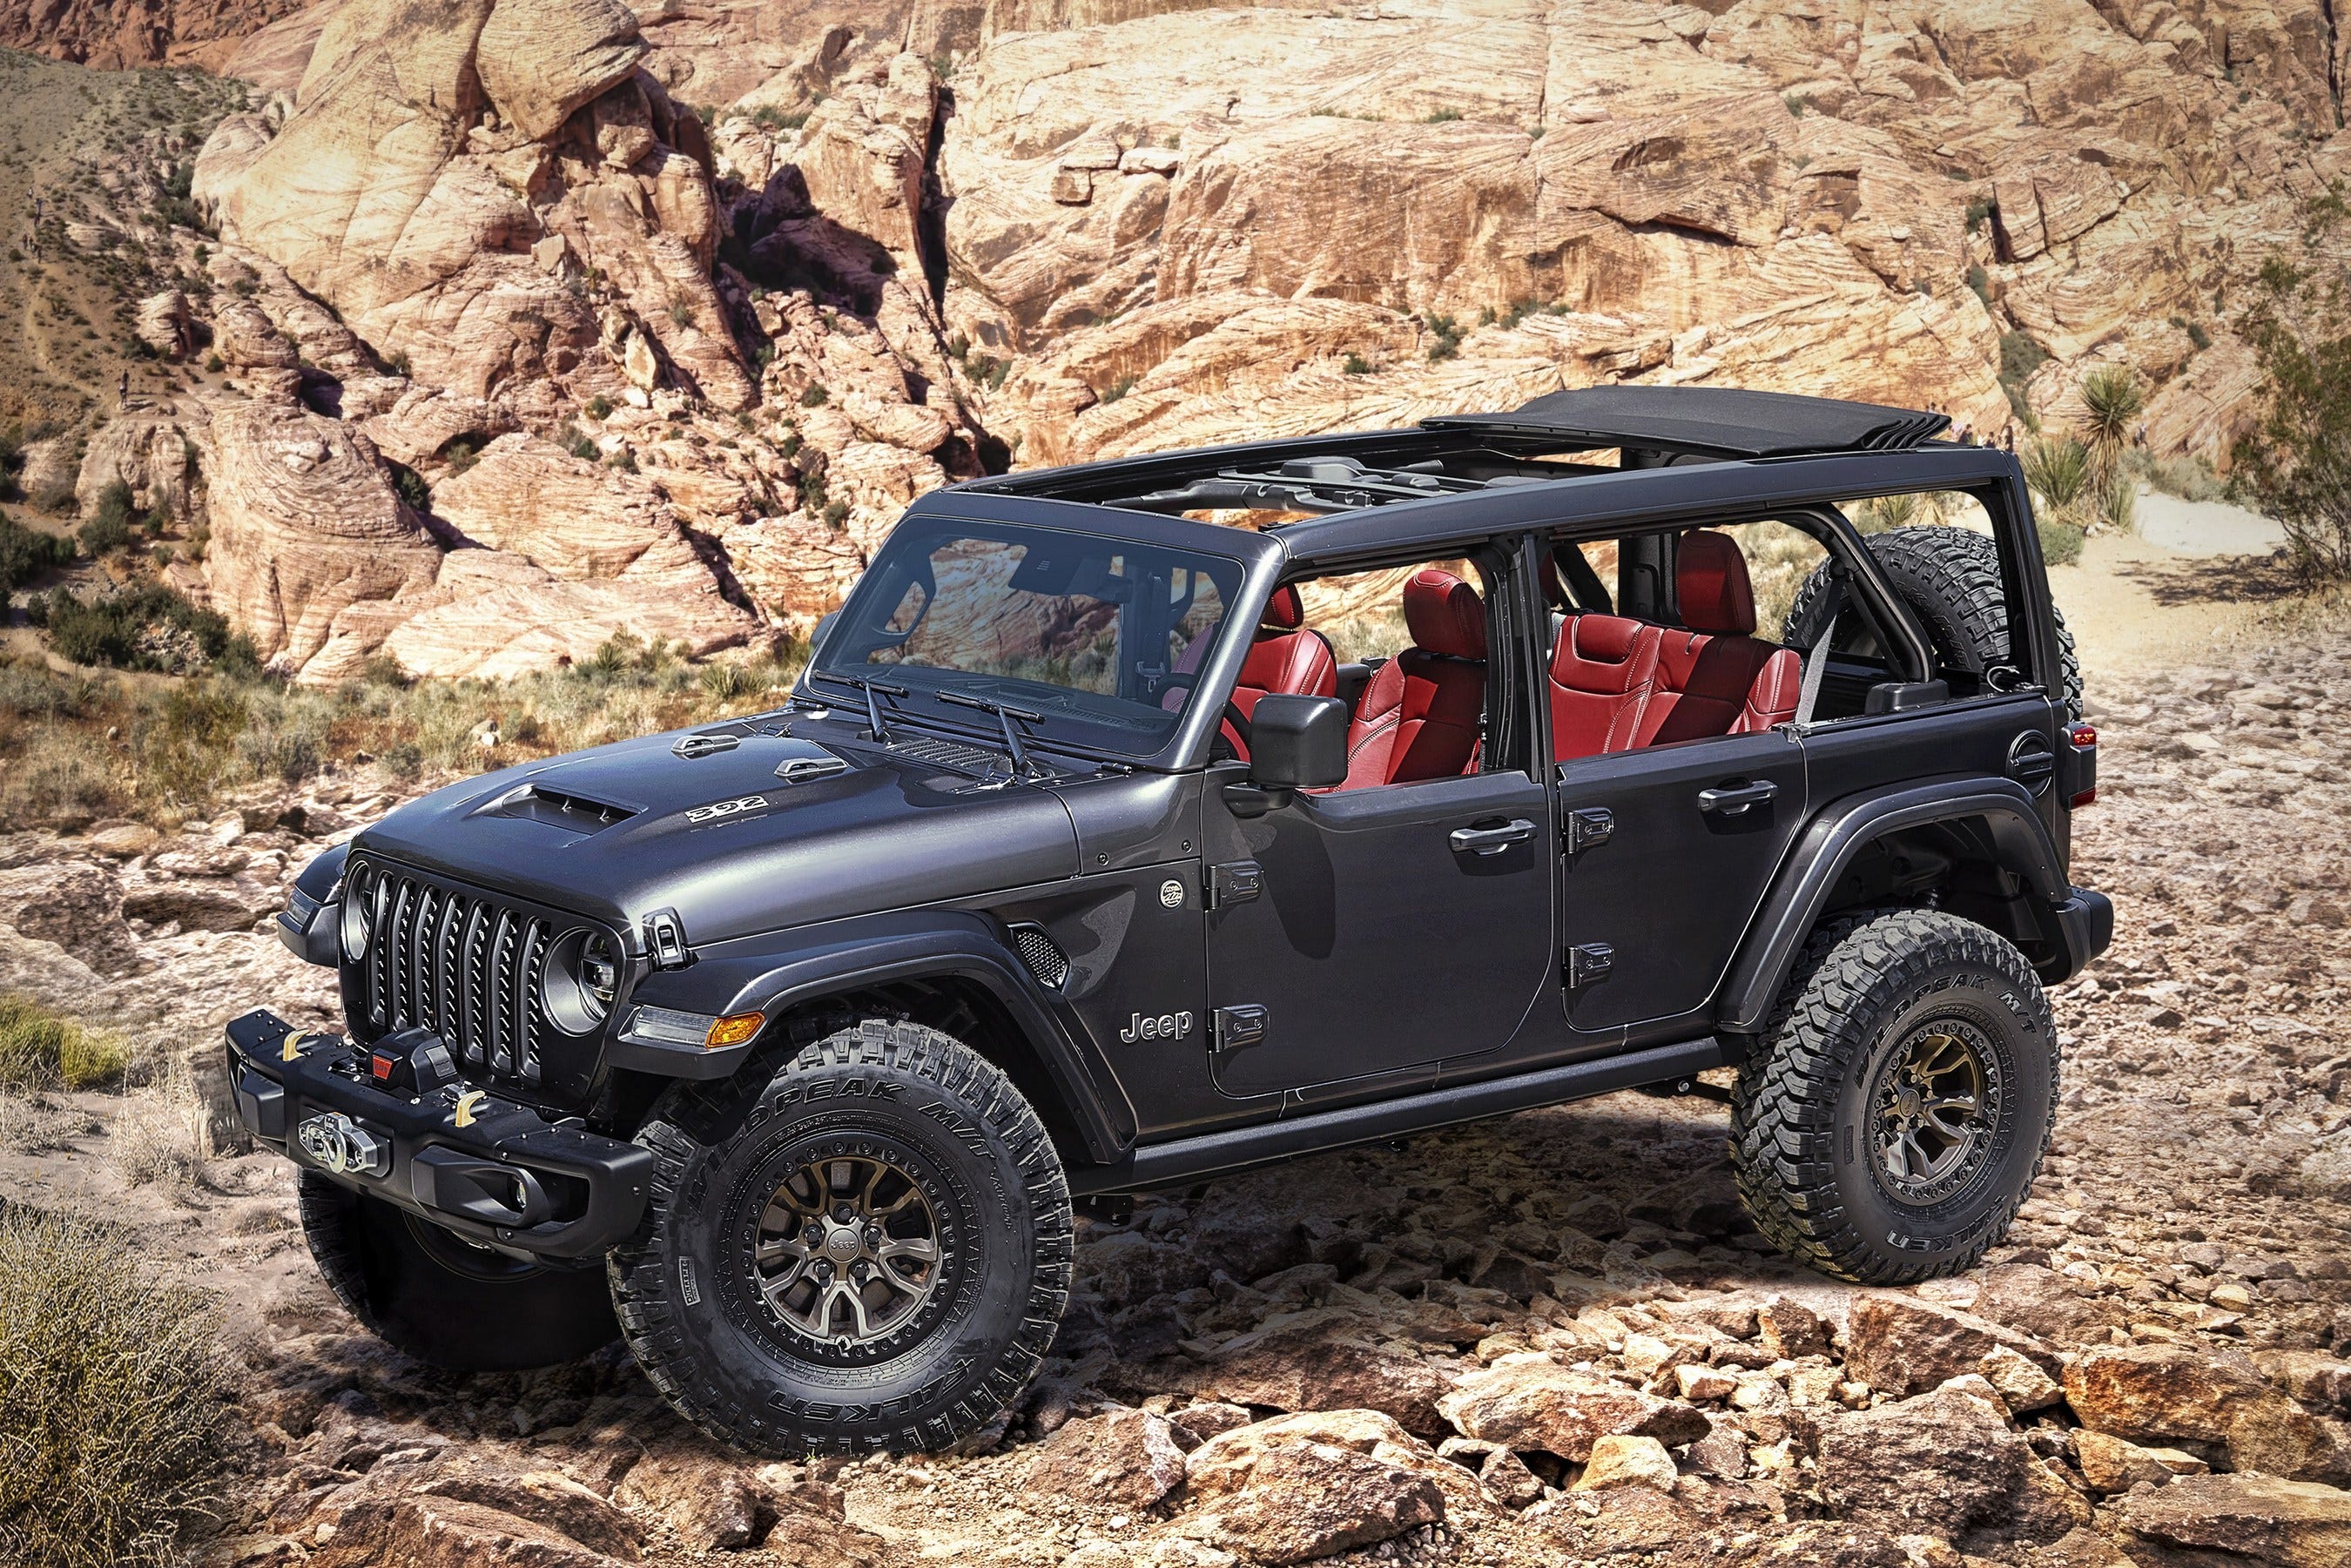 Jeep teases new V8 Wrangler Rubicon on 